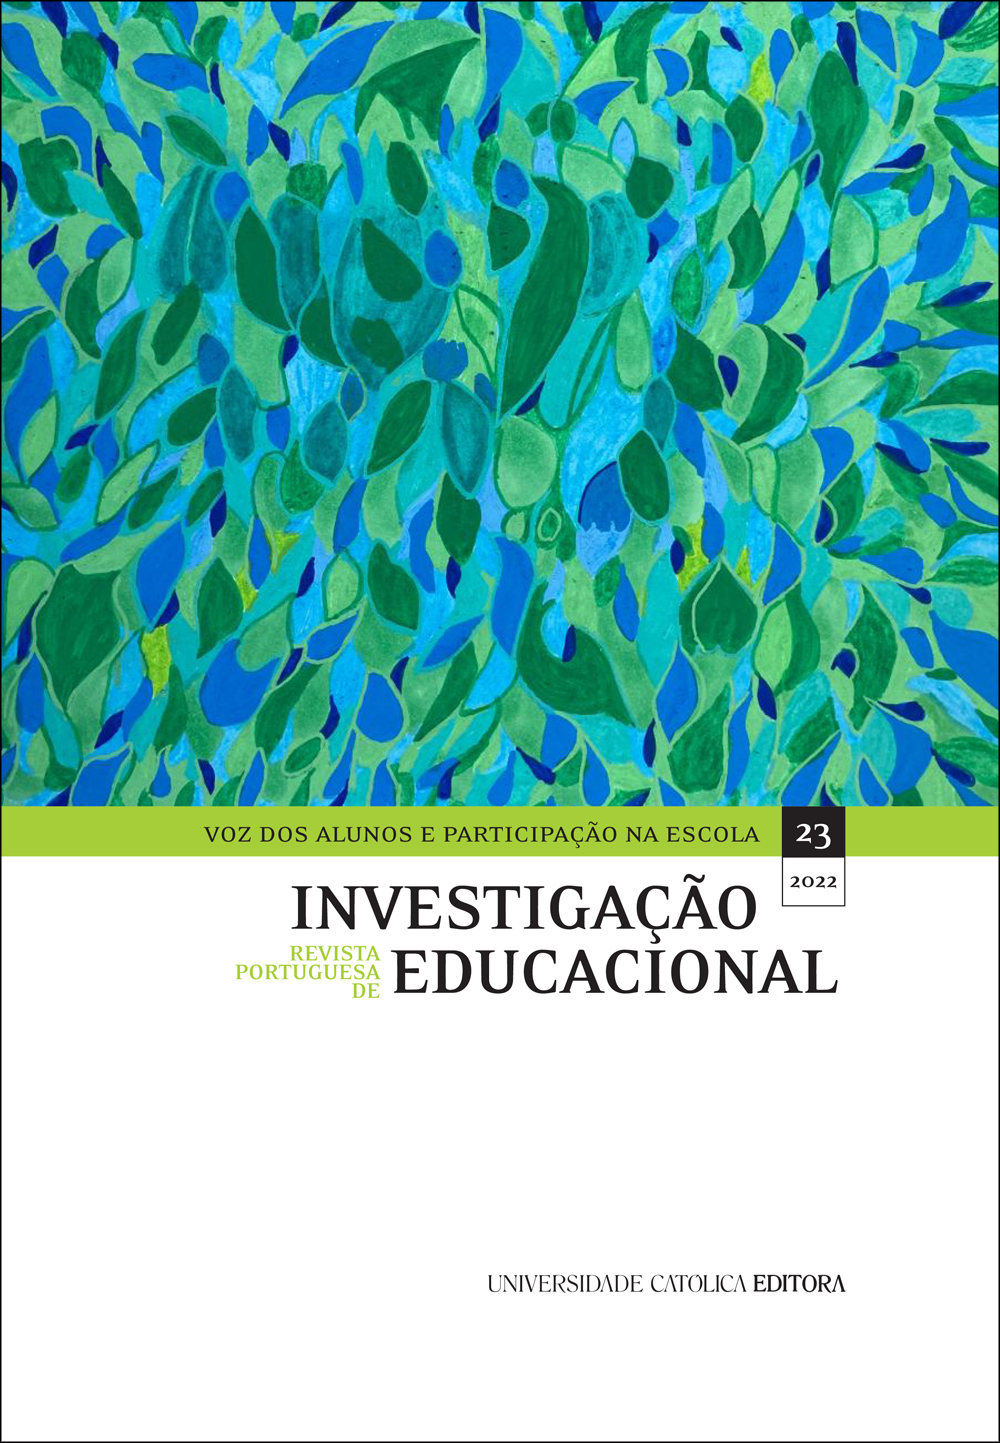 REVISTA PORTUGUESA DE INVESTIGAÇÃO EDUCACIONAL Nº23 - Voz dos alunos e participação na escola